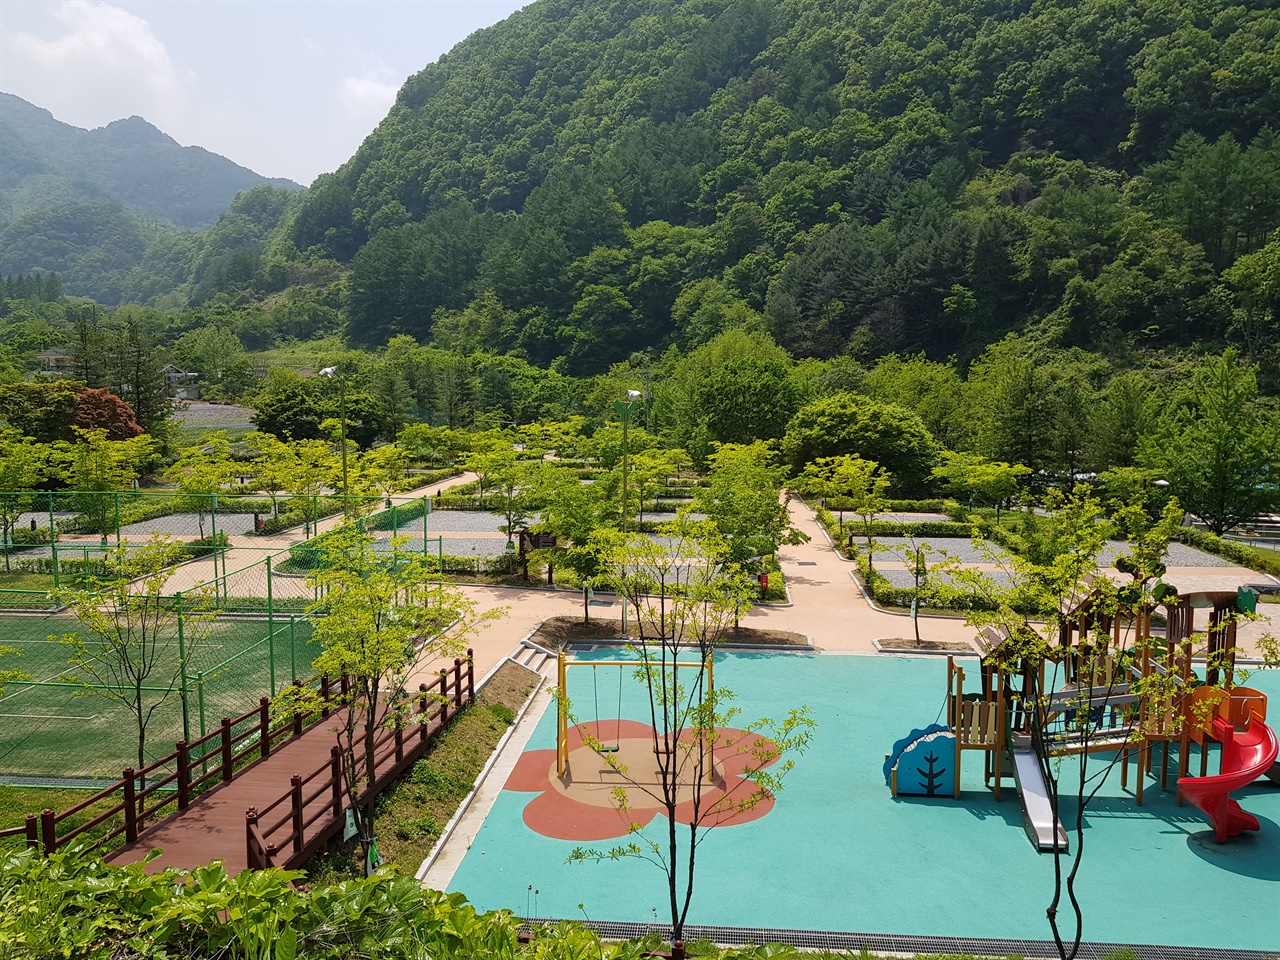 생태체육공원과 달리 텅빈 다리안관광지 유료 천동오토캠핑장